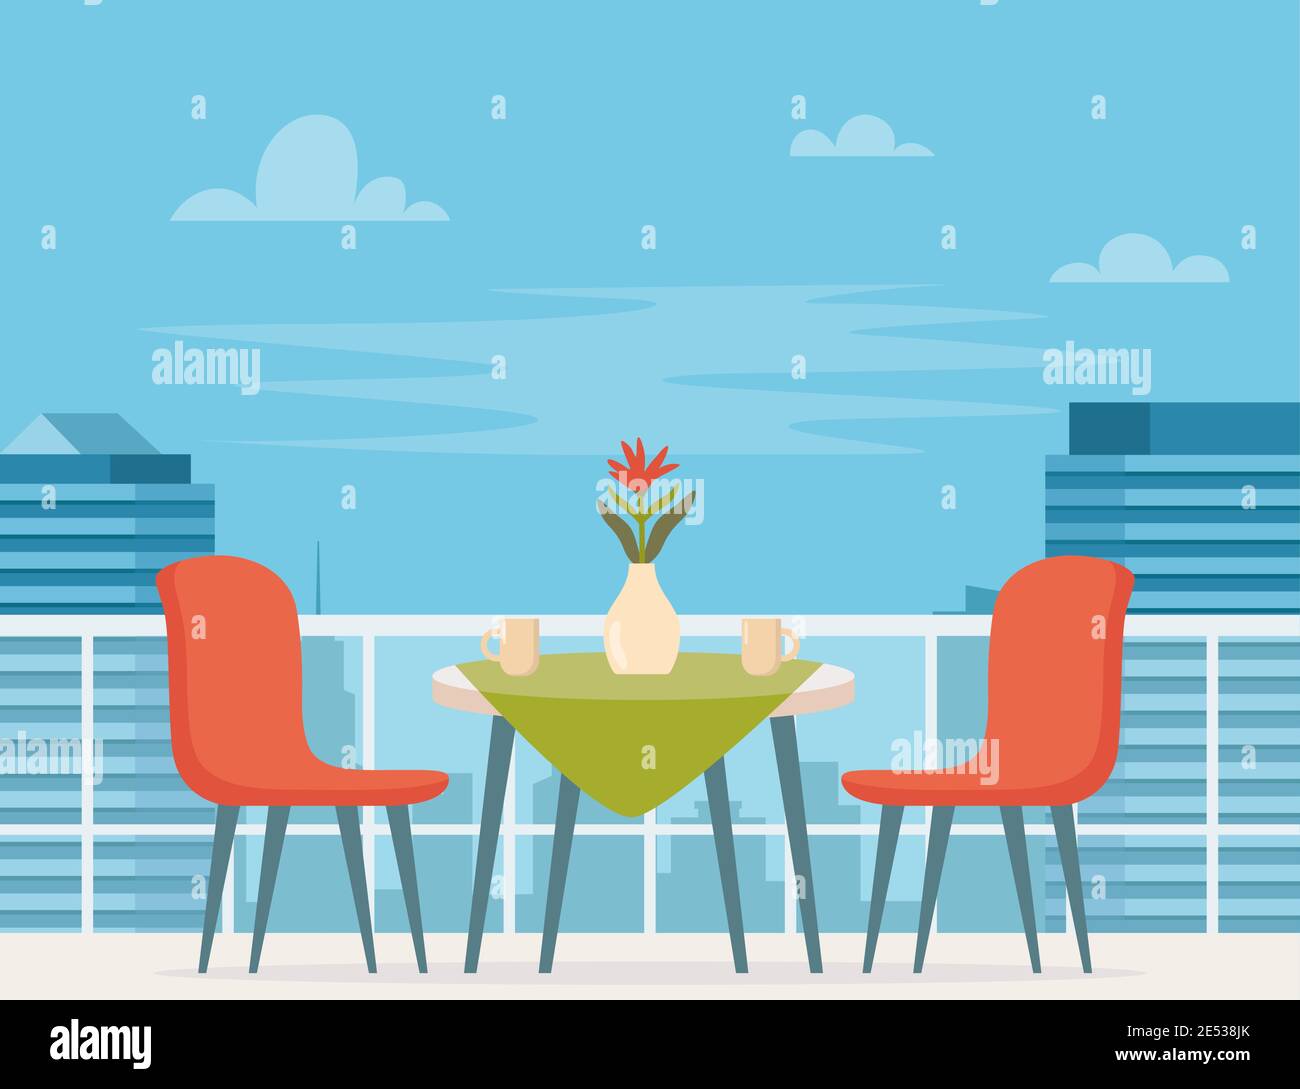 Sommer-Café-Terrasse mit Tisch und Stühlen im modernen Stadthintergrund. Street Restaurant Szene in flachem Design. Romantischer Esstisch für zwei Personen. Vec Stock Vektor